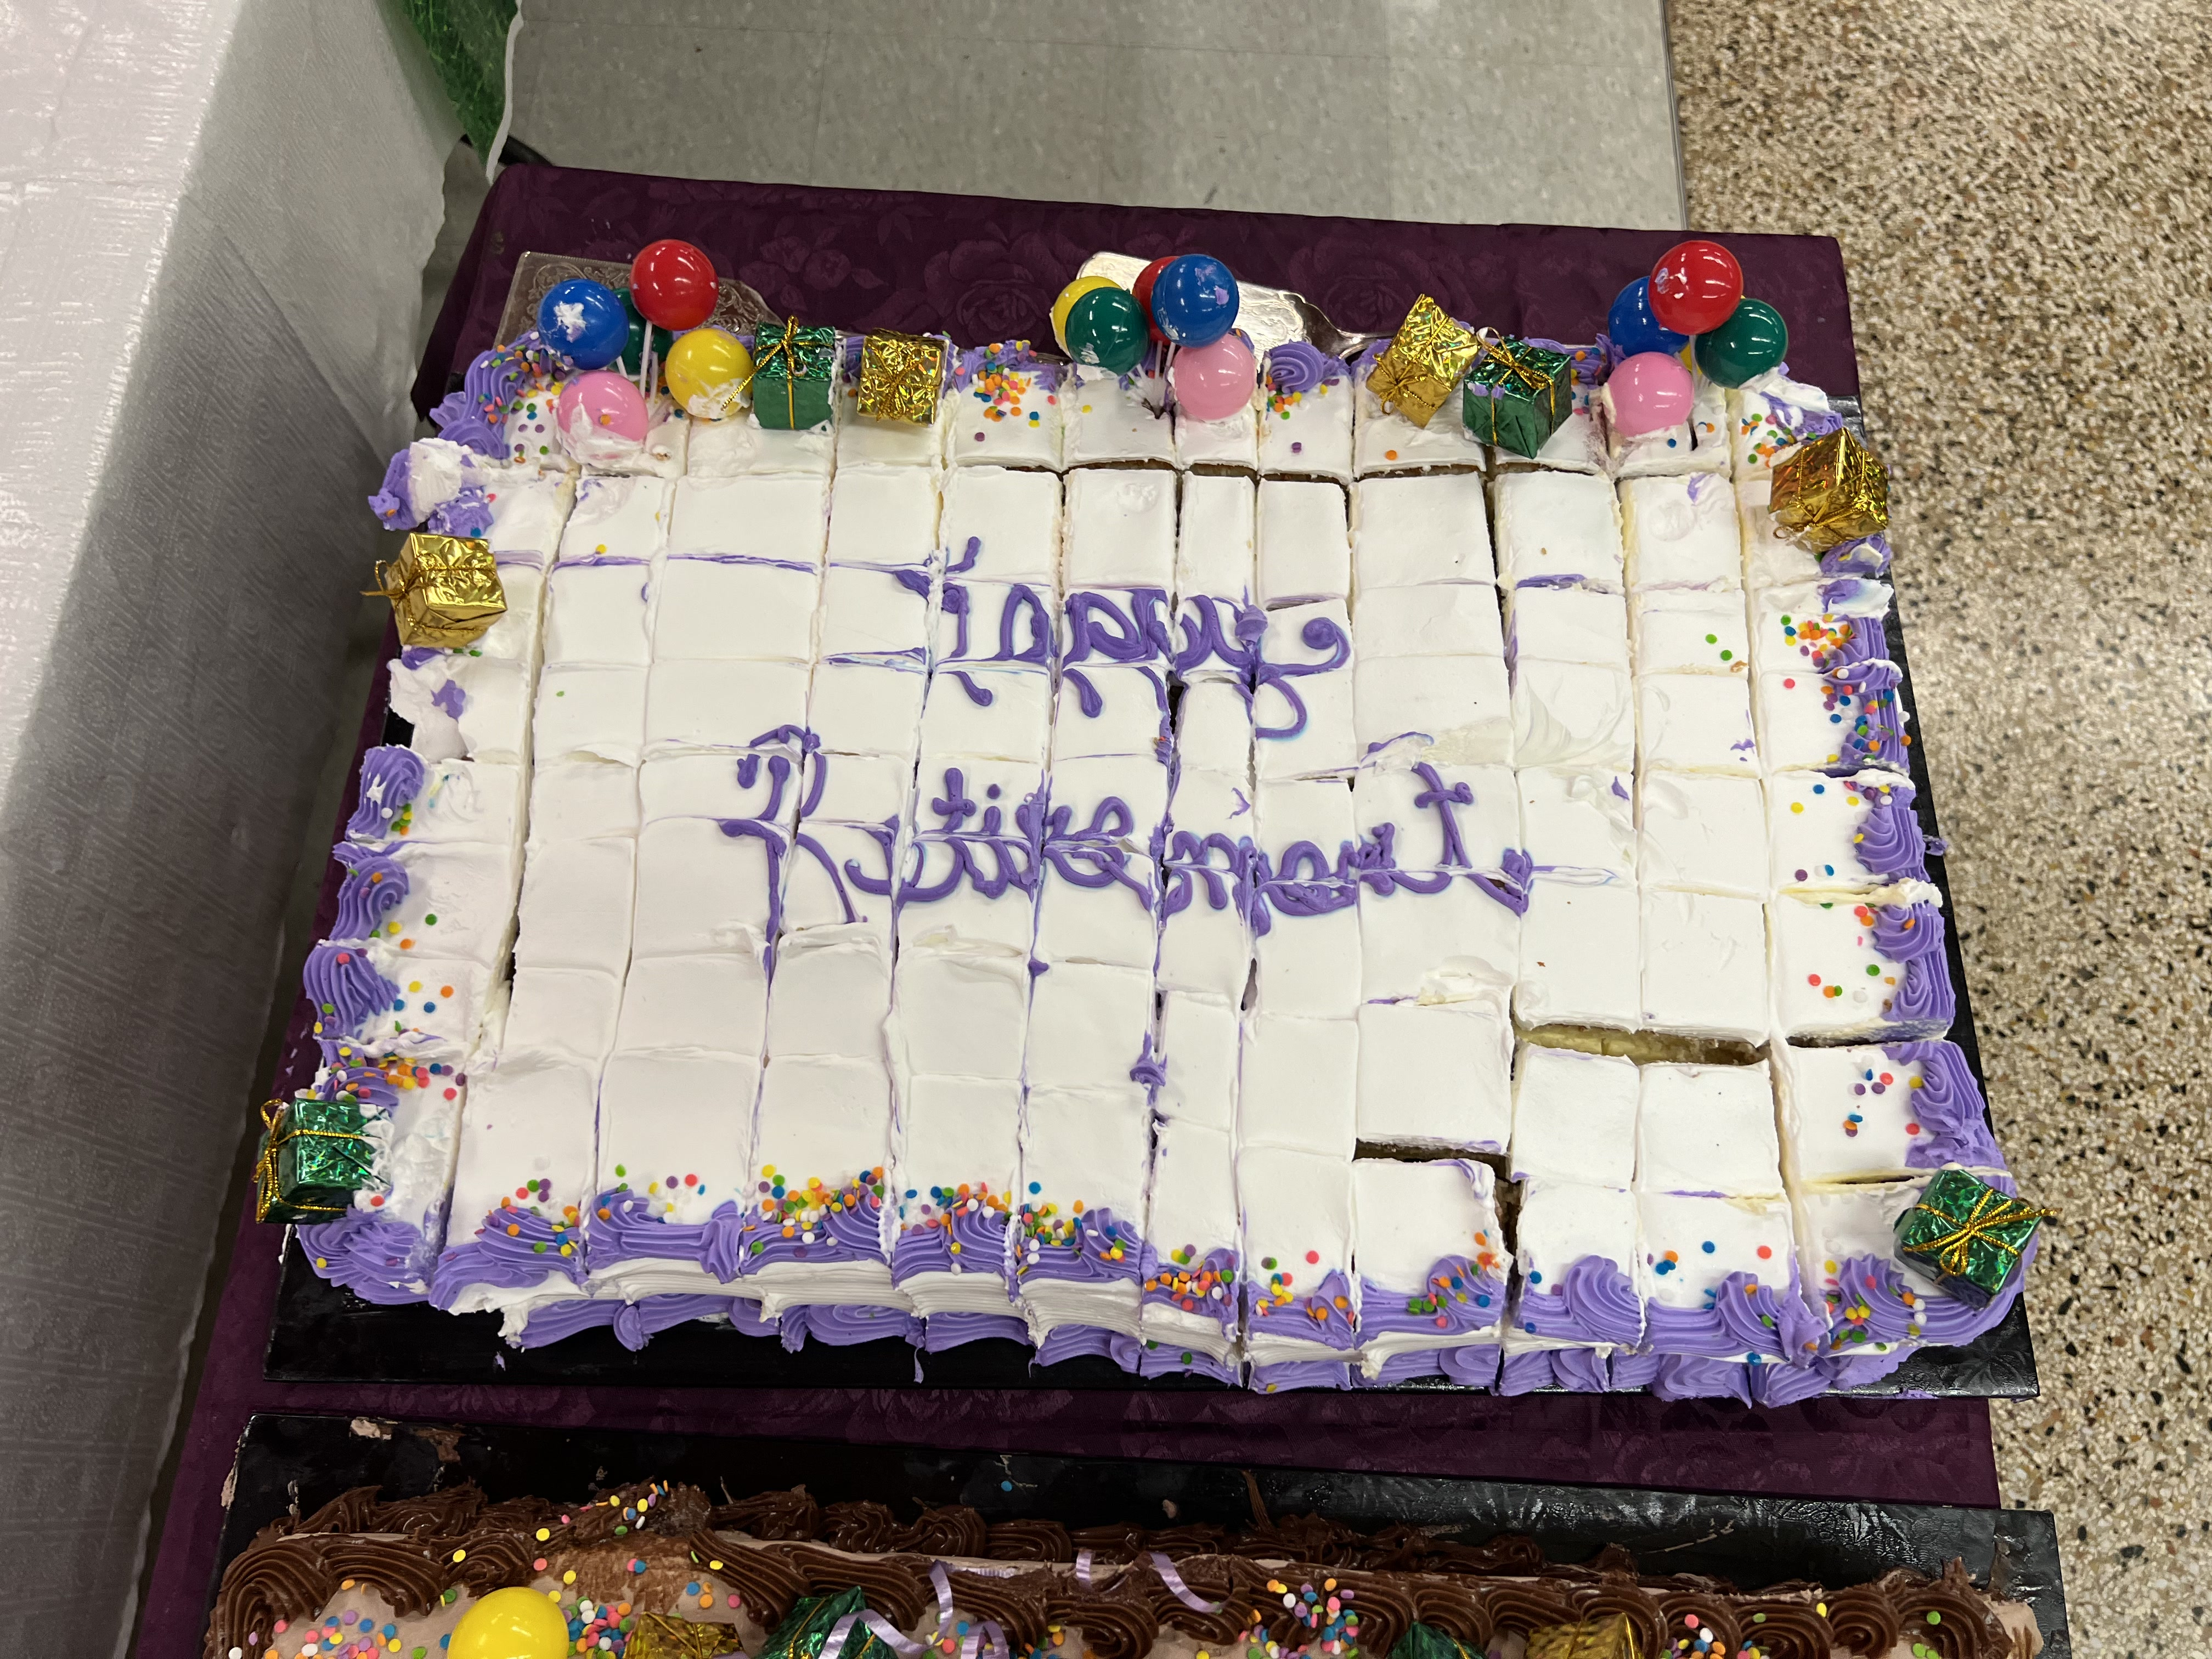 "Happy Retirement" Cake